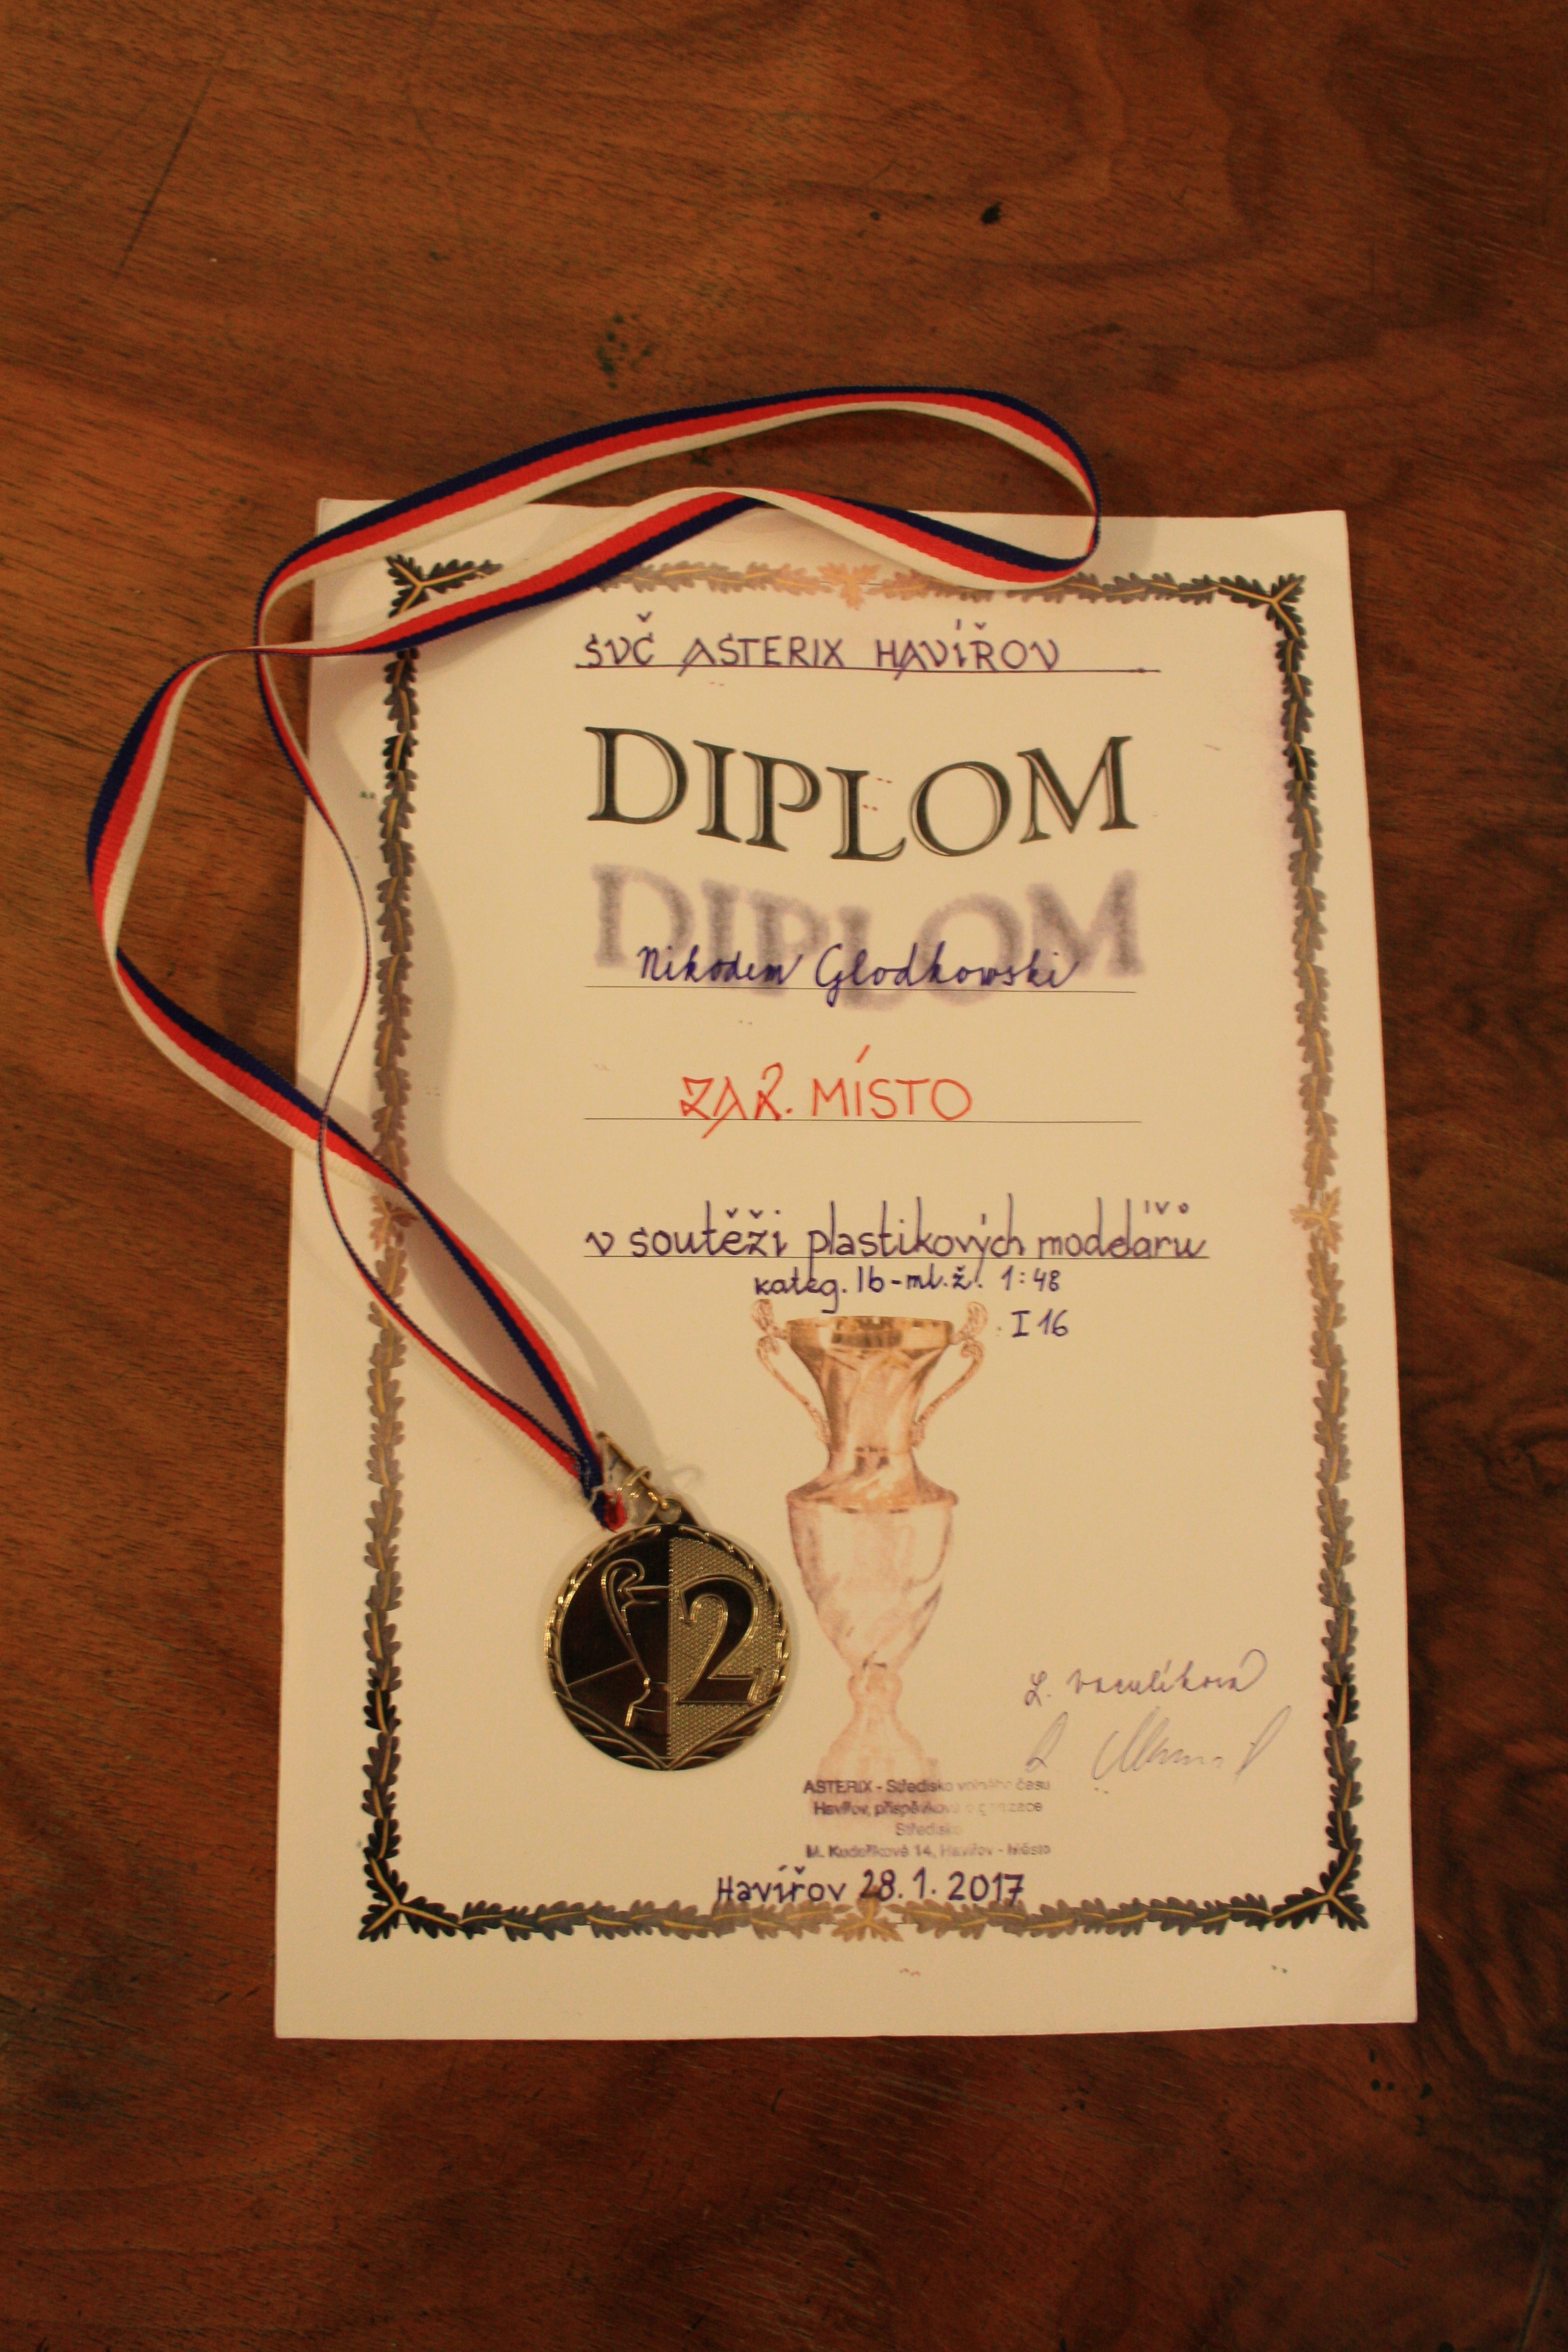 Srebrny medal i dyplom w konkursie modelarskim w Czechcach